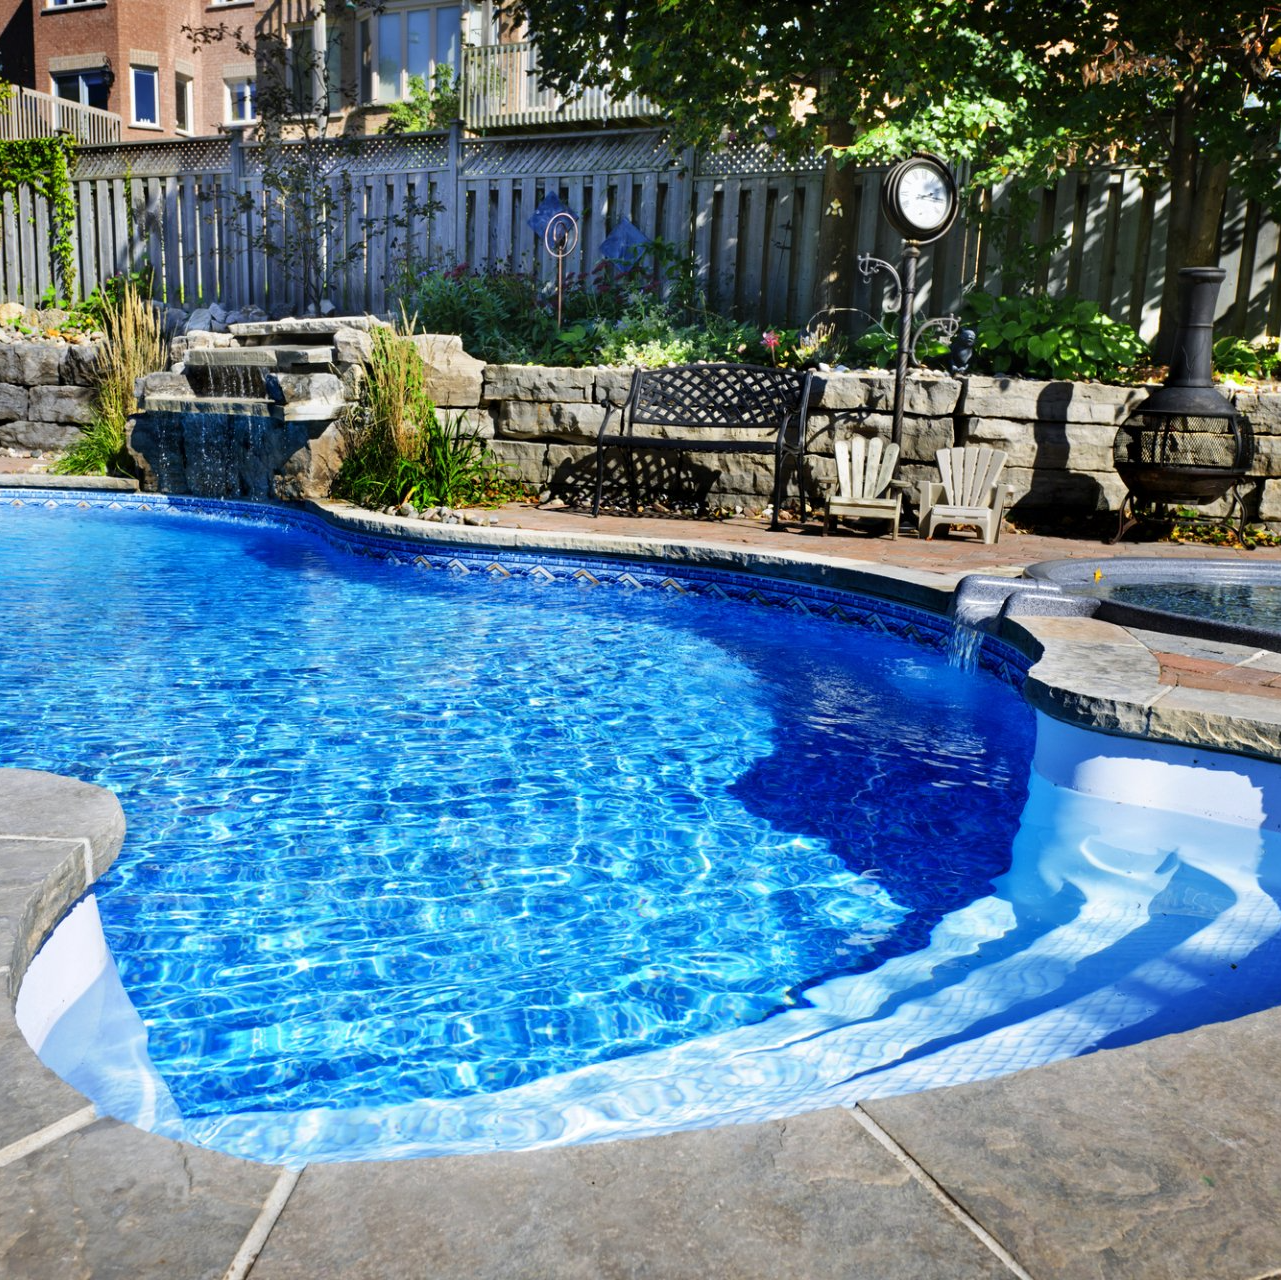 Pool Contractor in Kansas | Ground Zero Pools & Spas, LLC